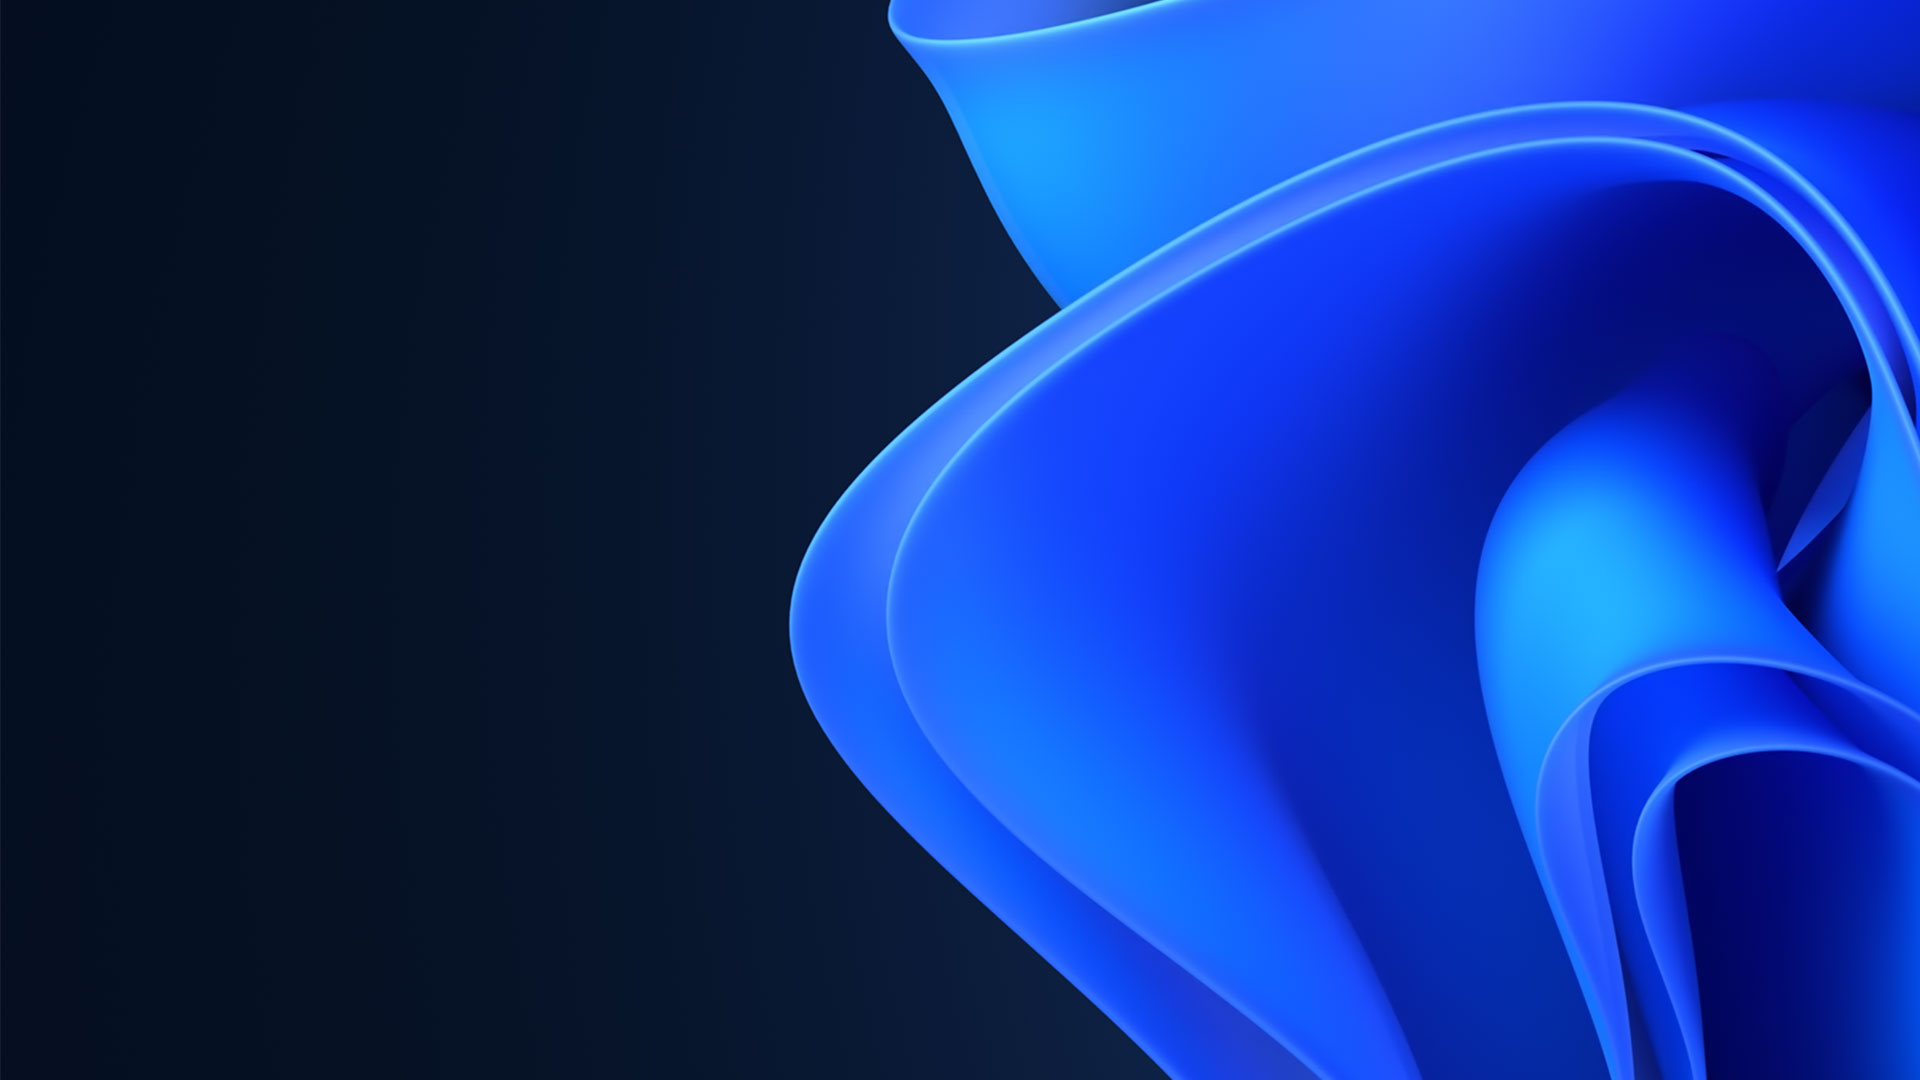  Windows 11-logotypen med ett blått band som blommar